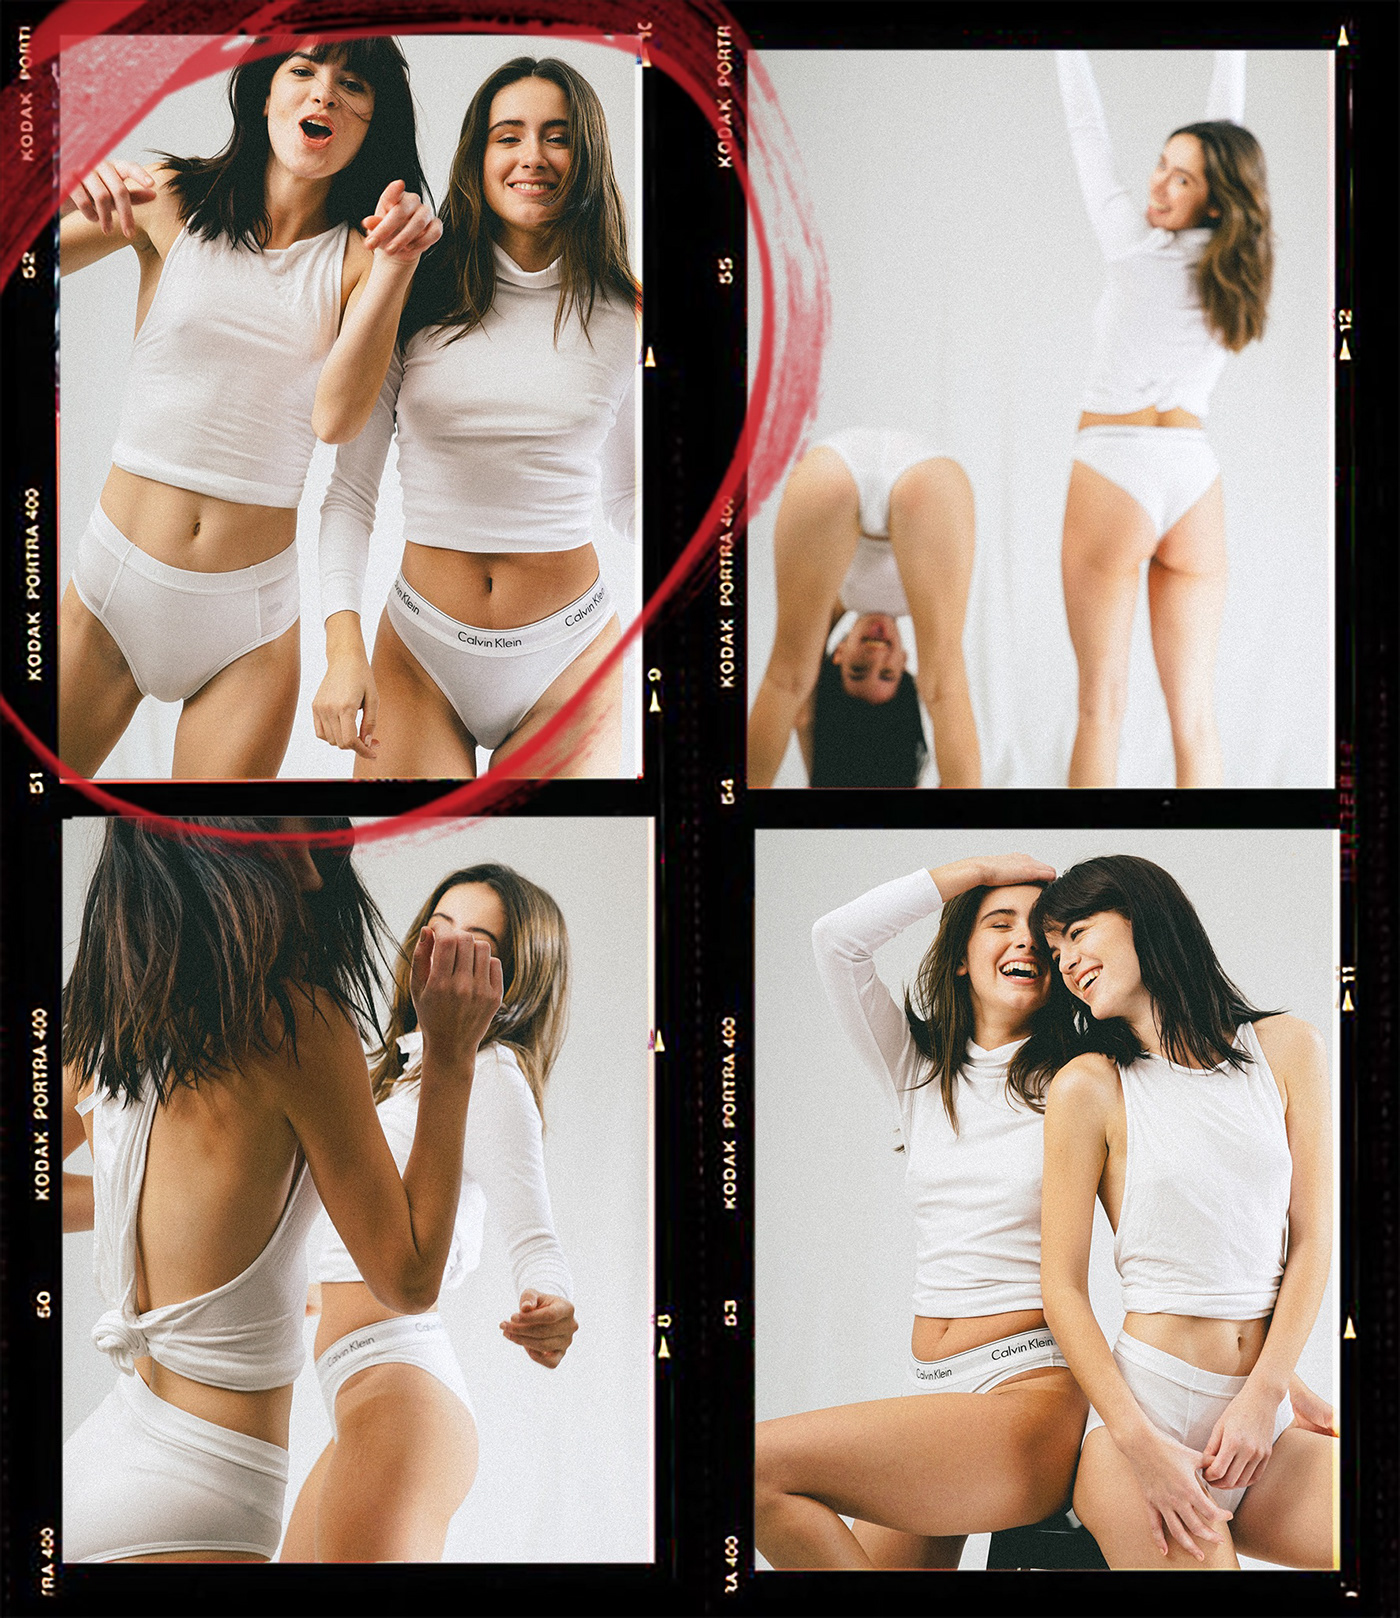 jerfk Alexander wang Calvin klein Underwear lifestyle campaign undies White Underwear vogue editorial